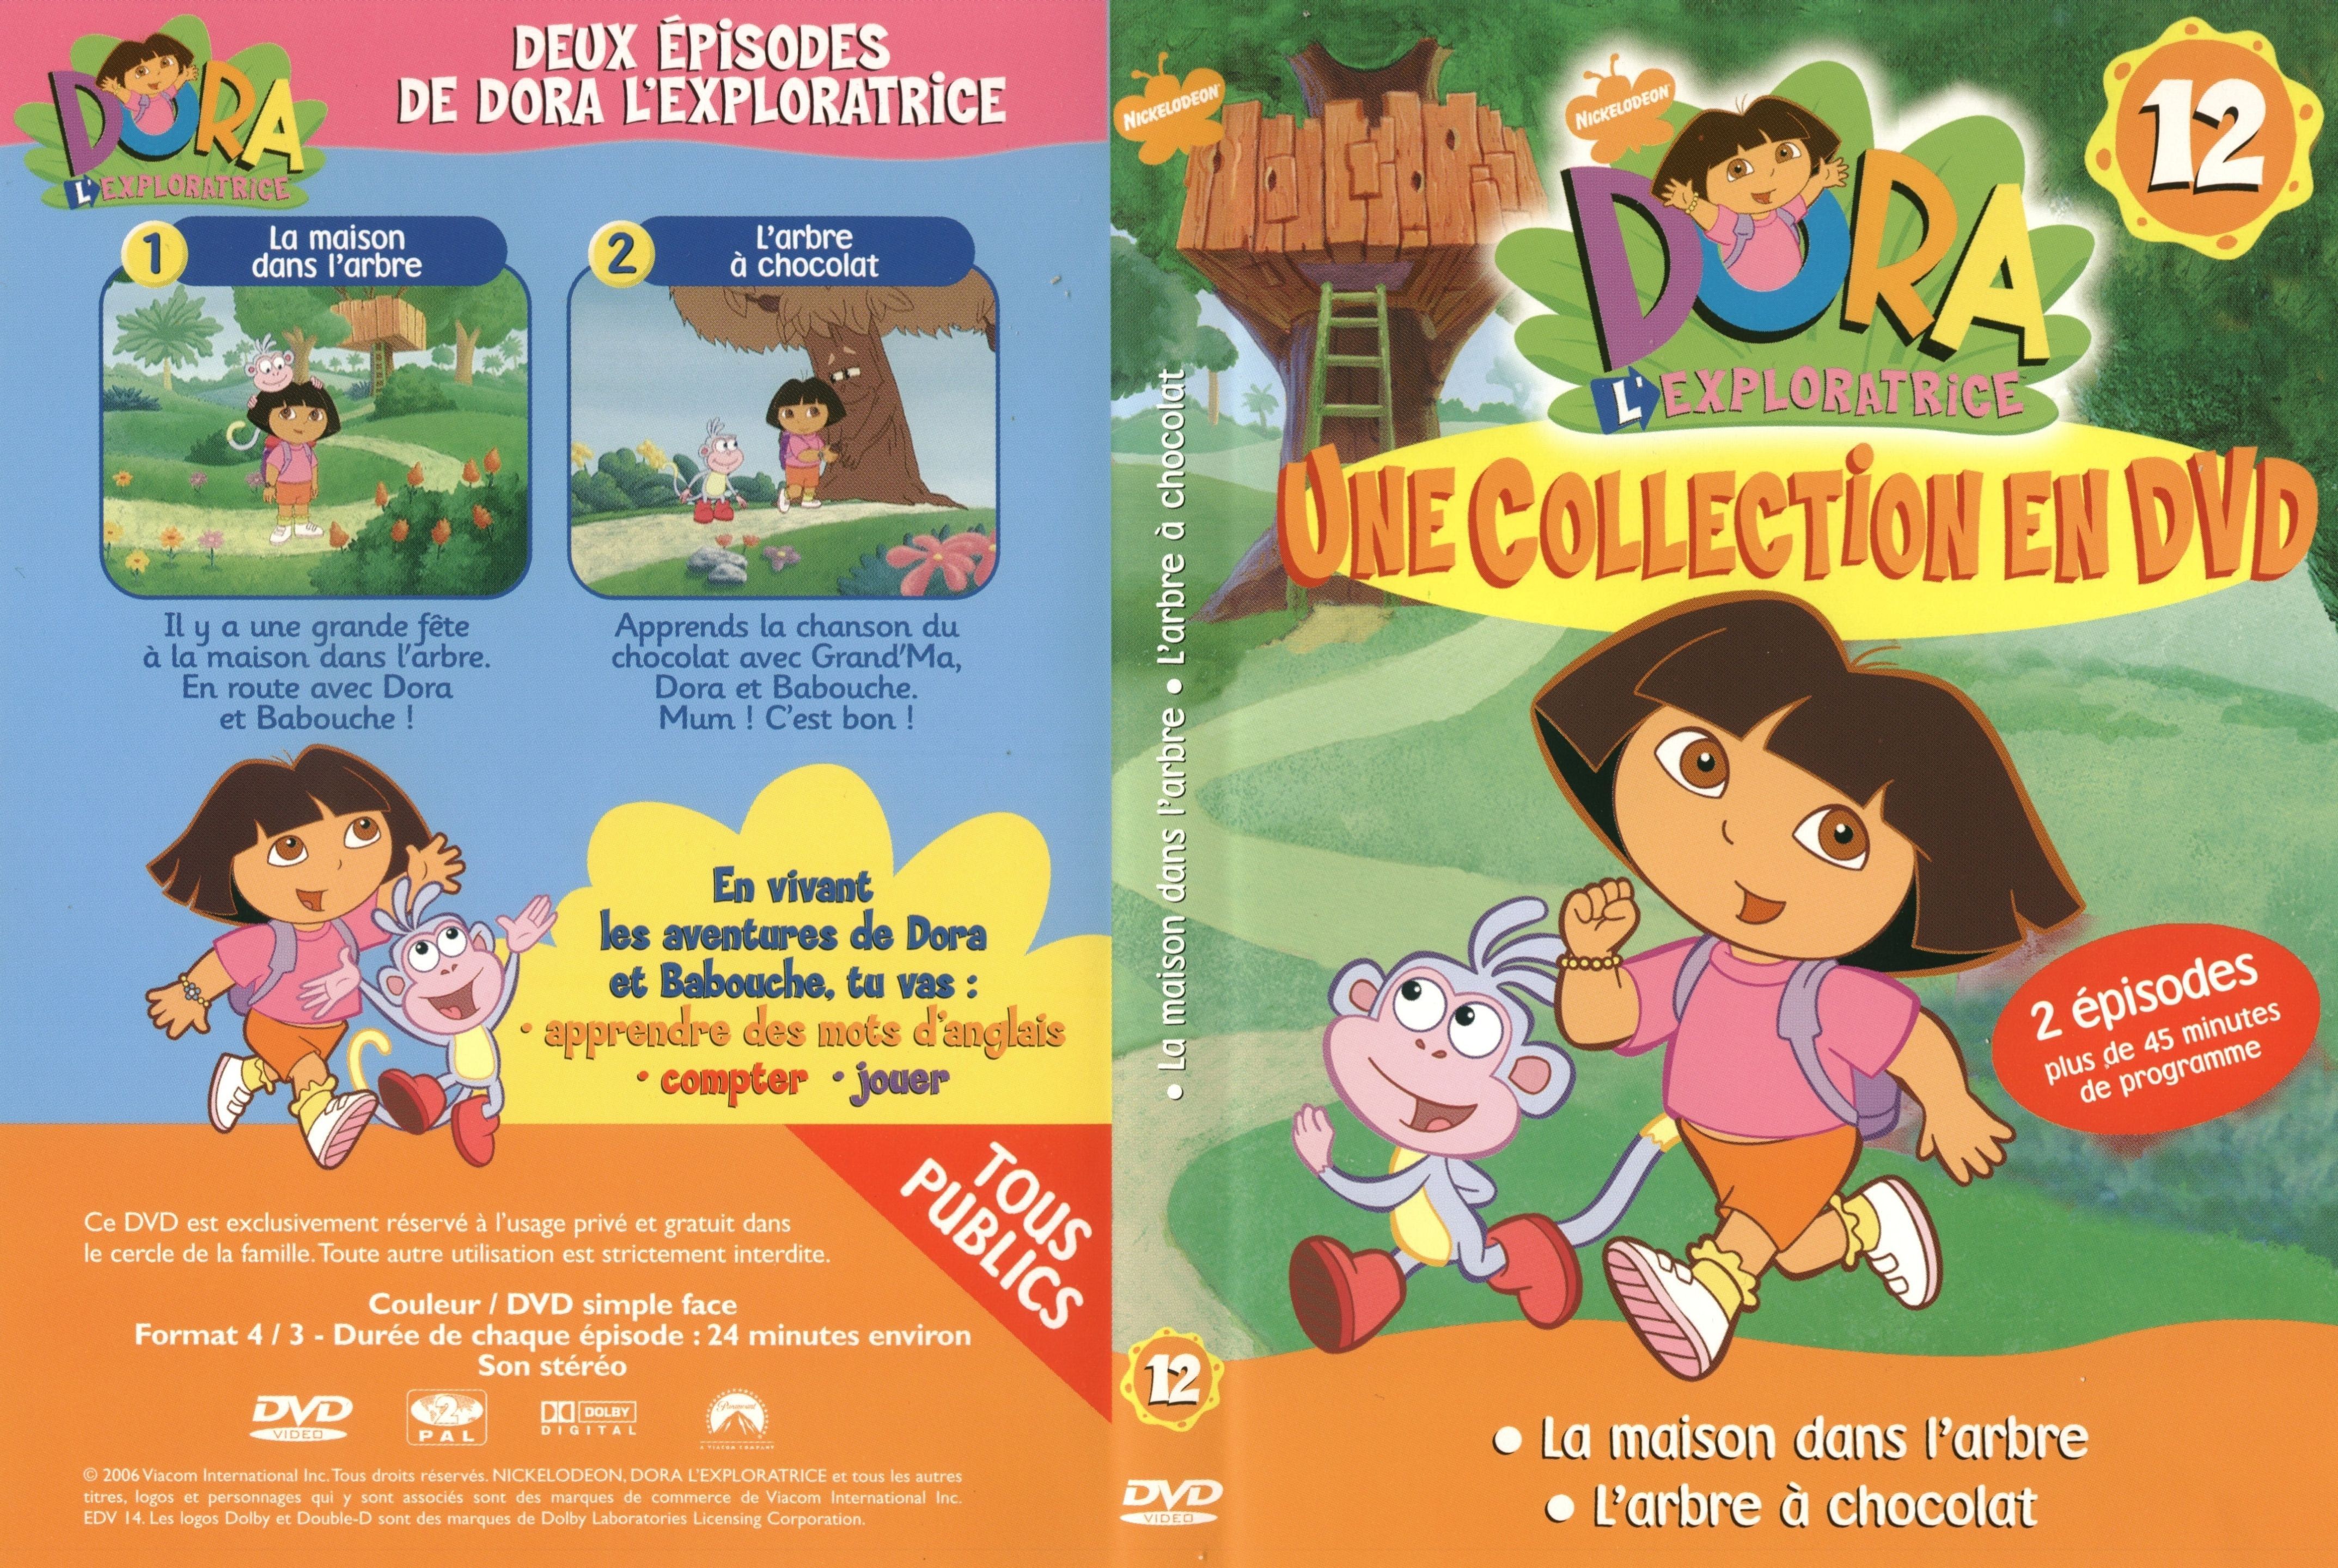 Jaquette DVD De Dora Lexploratrice Vol 12 Cinéma Passion.